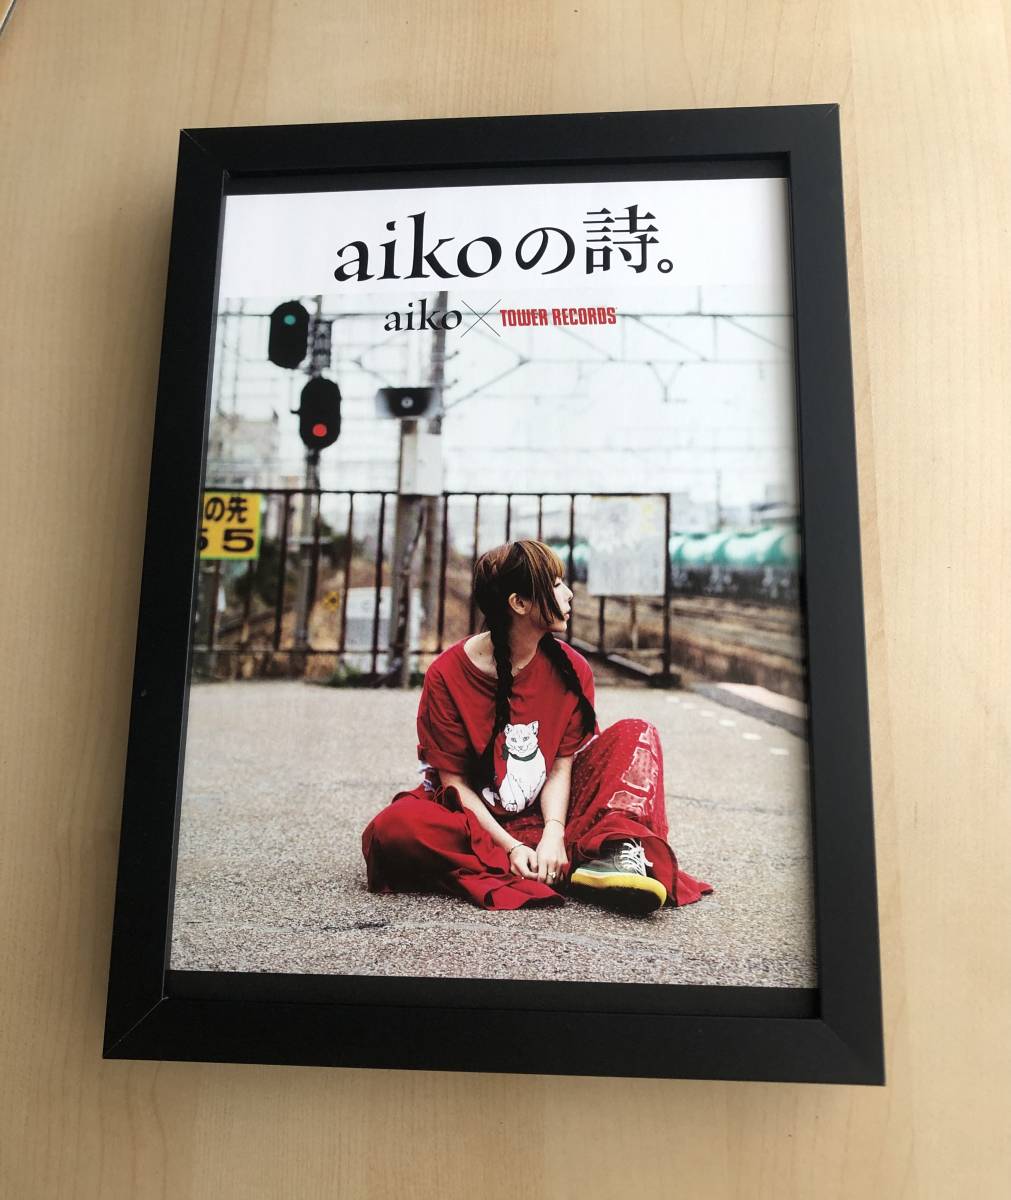 kj ★ Artículo enmarcado ★ Tower Records Poema de Aiko Rara foto publicitaria enmarcada tamaño B5 Diseño estilo póster Tower Records No está a la venta Aiko Aiko, antiguo, recopilación, Materiales impresos, otros